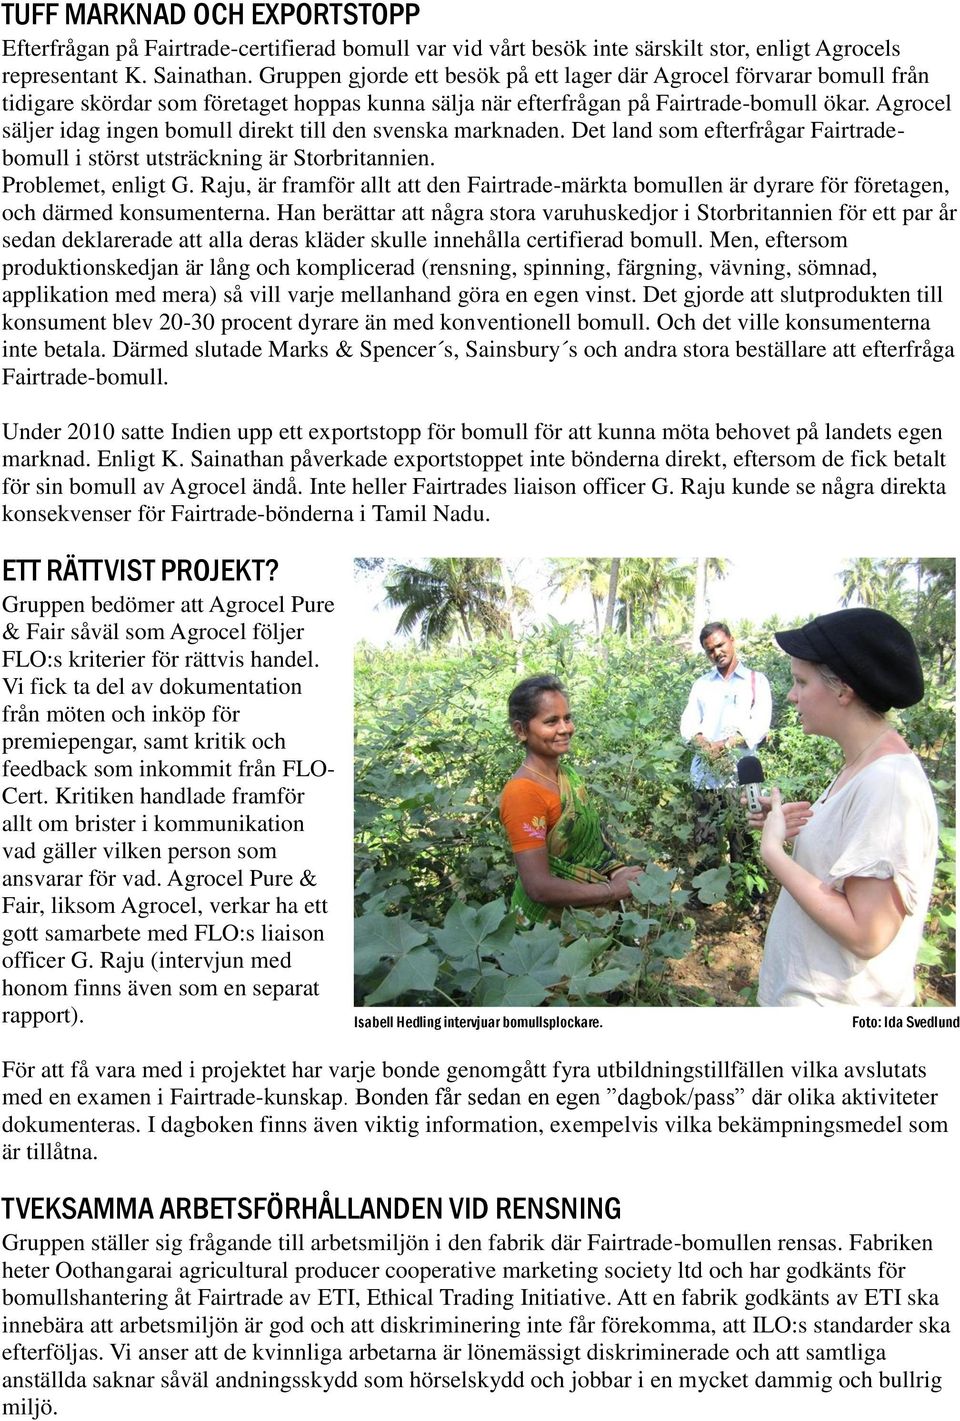 Agrocel säljer idag ingen bomull direkt till den svenska marknaden. Det land som efterfrågar Fairtradebomull i störst utsträckning är Storbritannien. Problemet, enligt G.